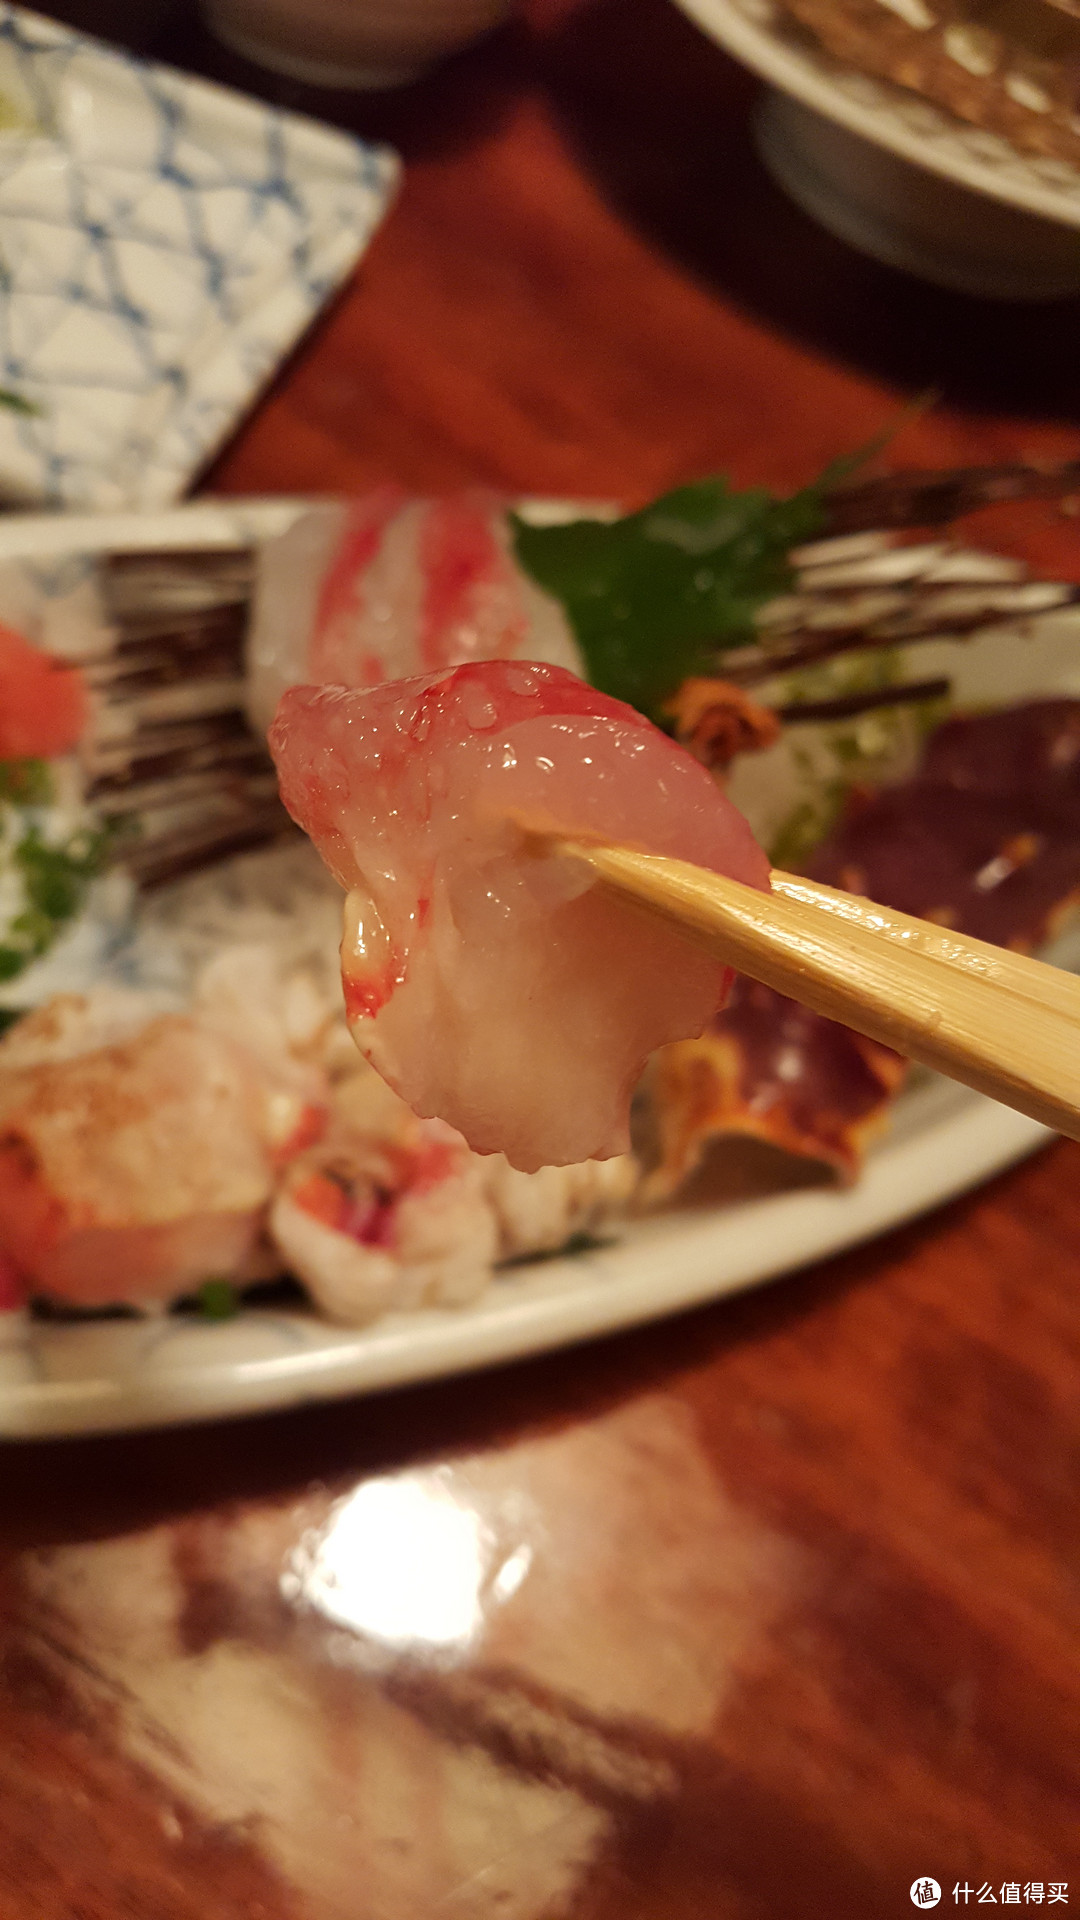 品味做减法的日本饮食